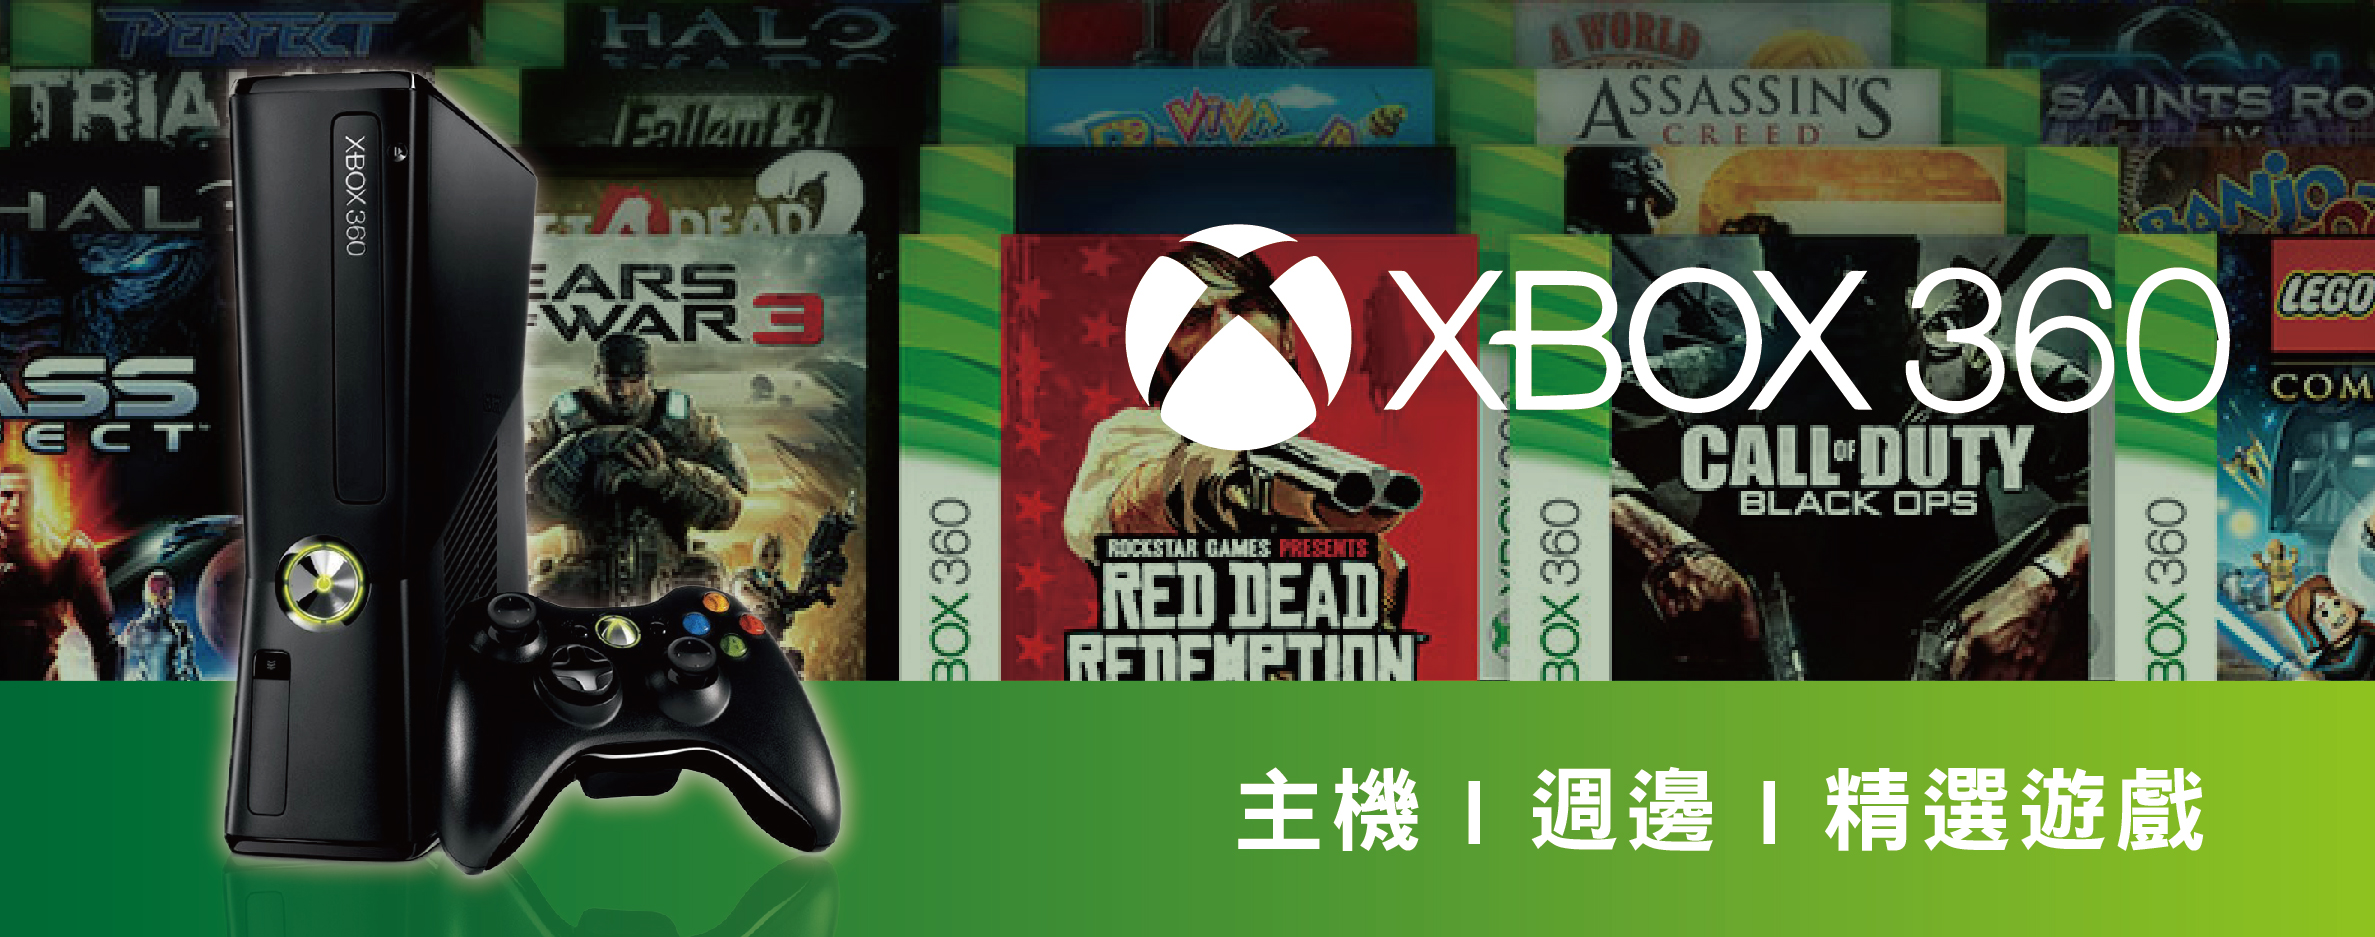 XBOX360 週邊/遊戲 - 茶米電玩品牌名店